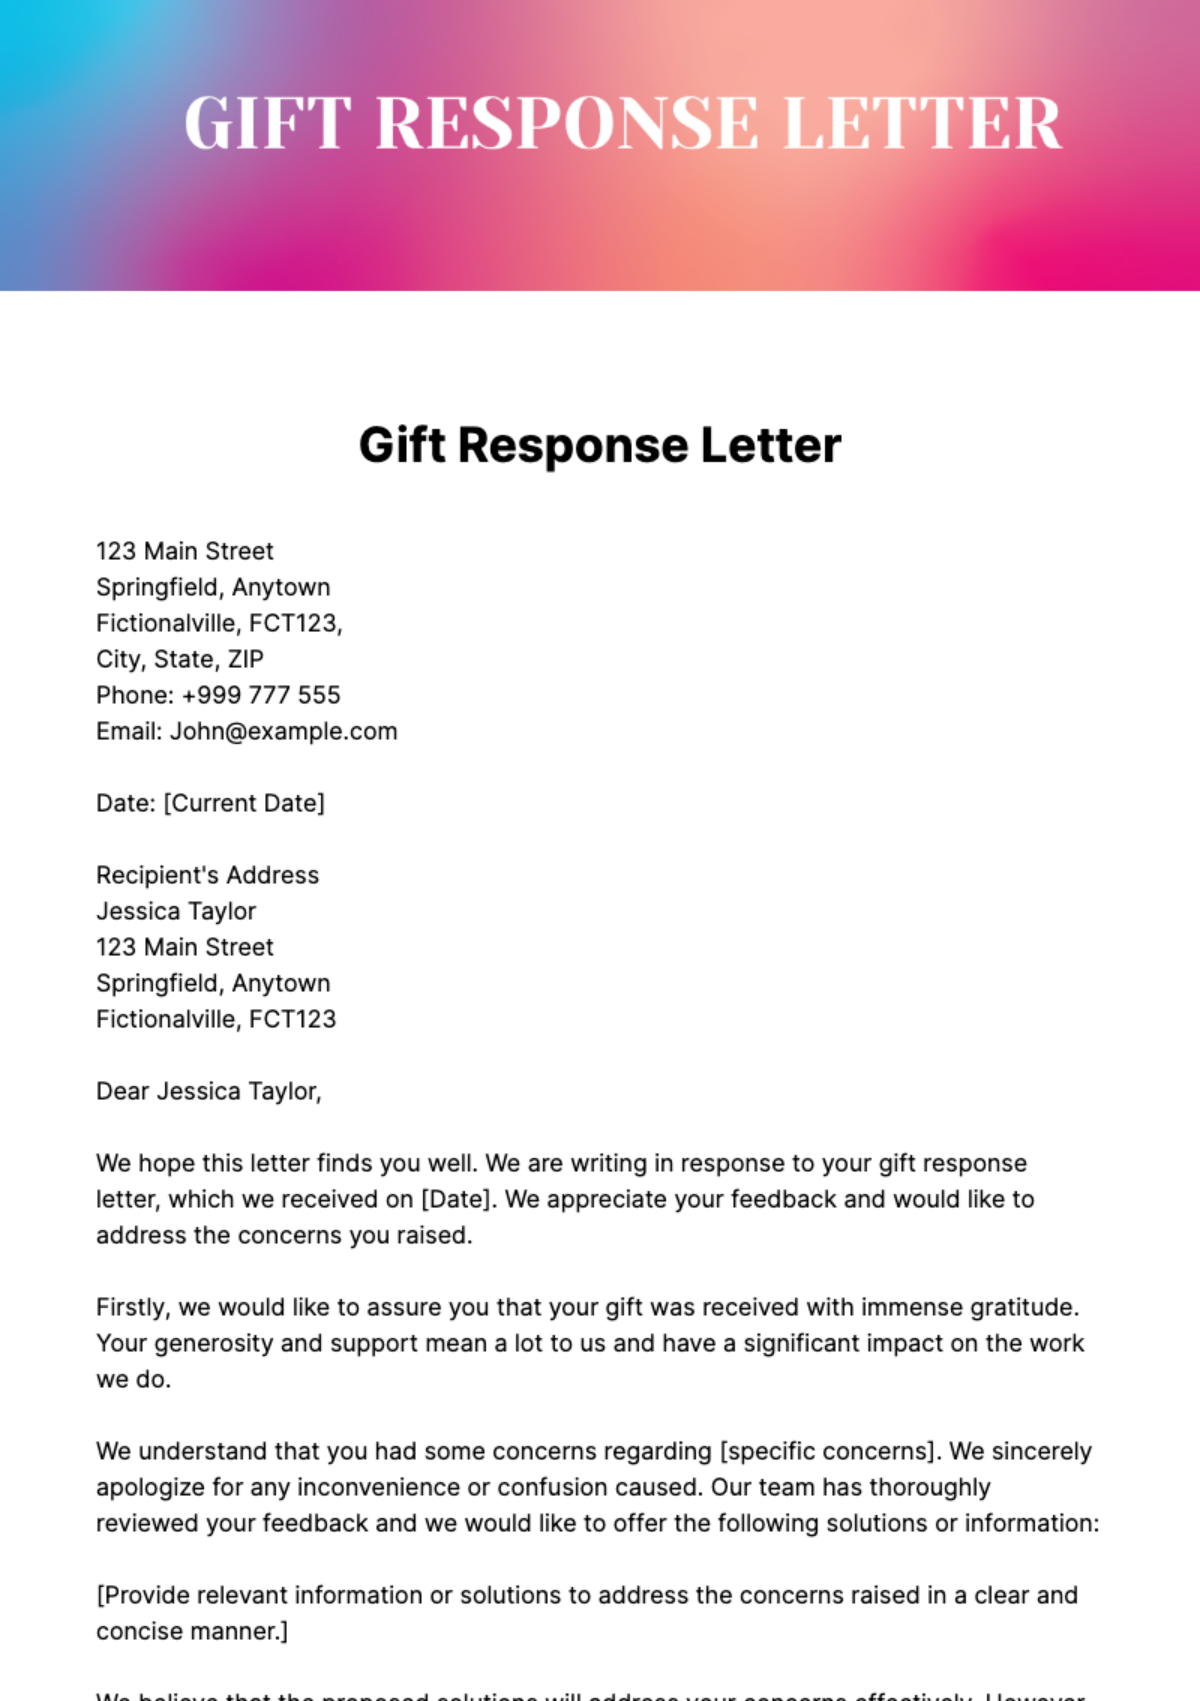 Gift Response Letter Template